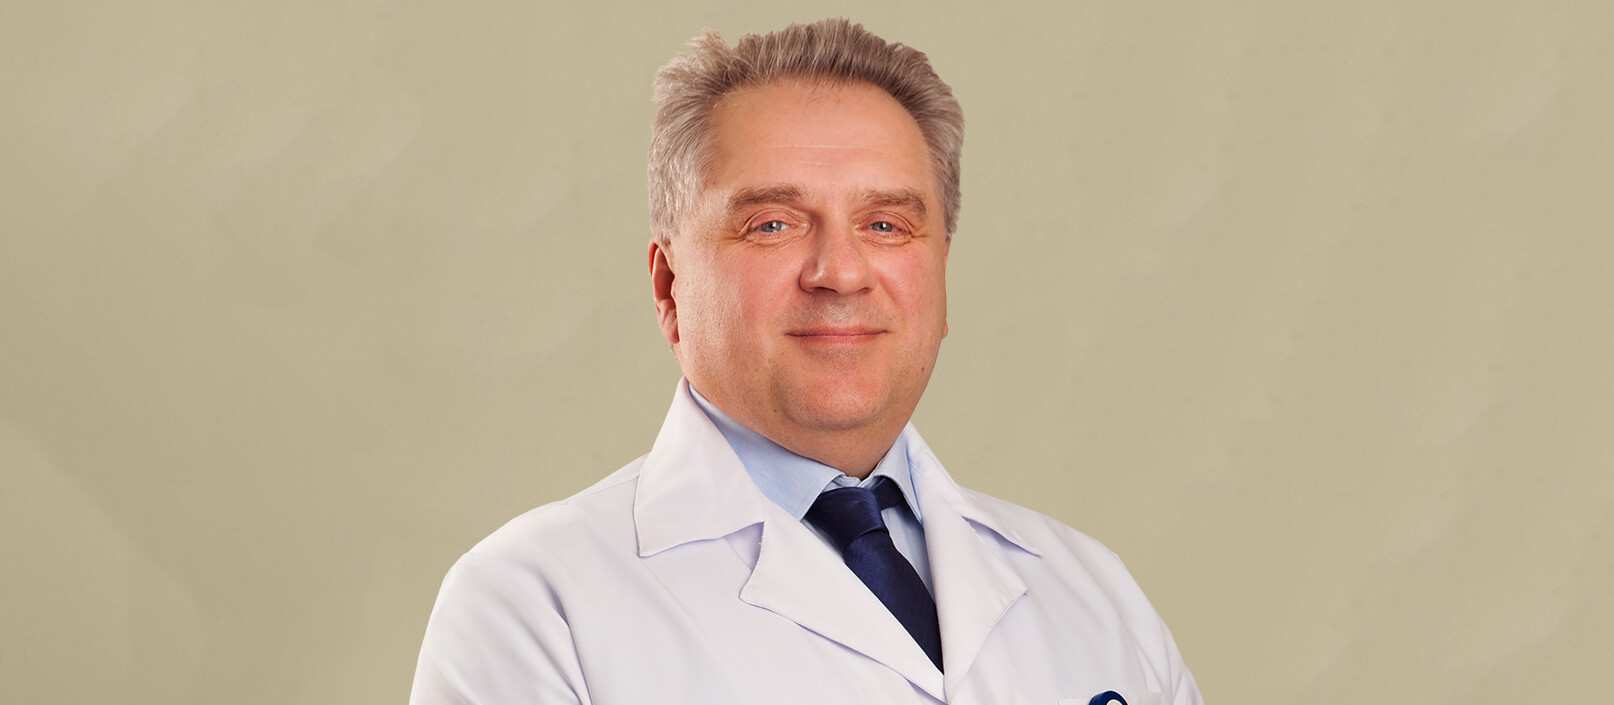 Вадим Хатиашвили MD, PhD